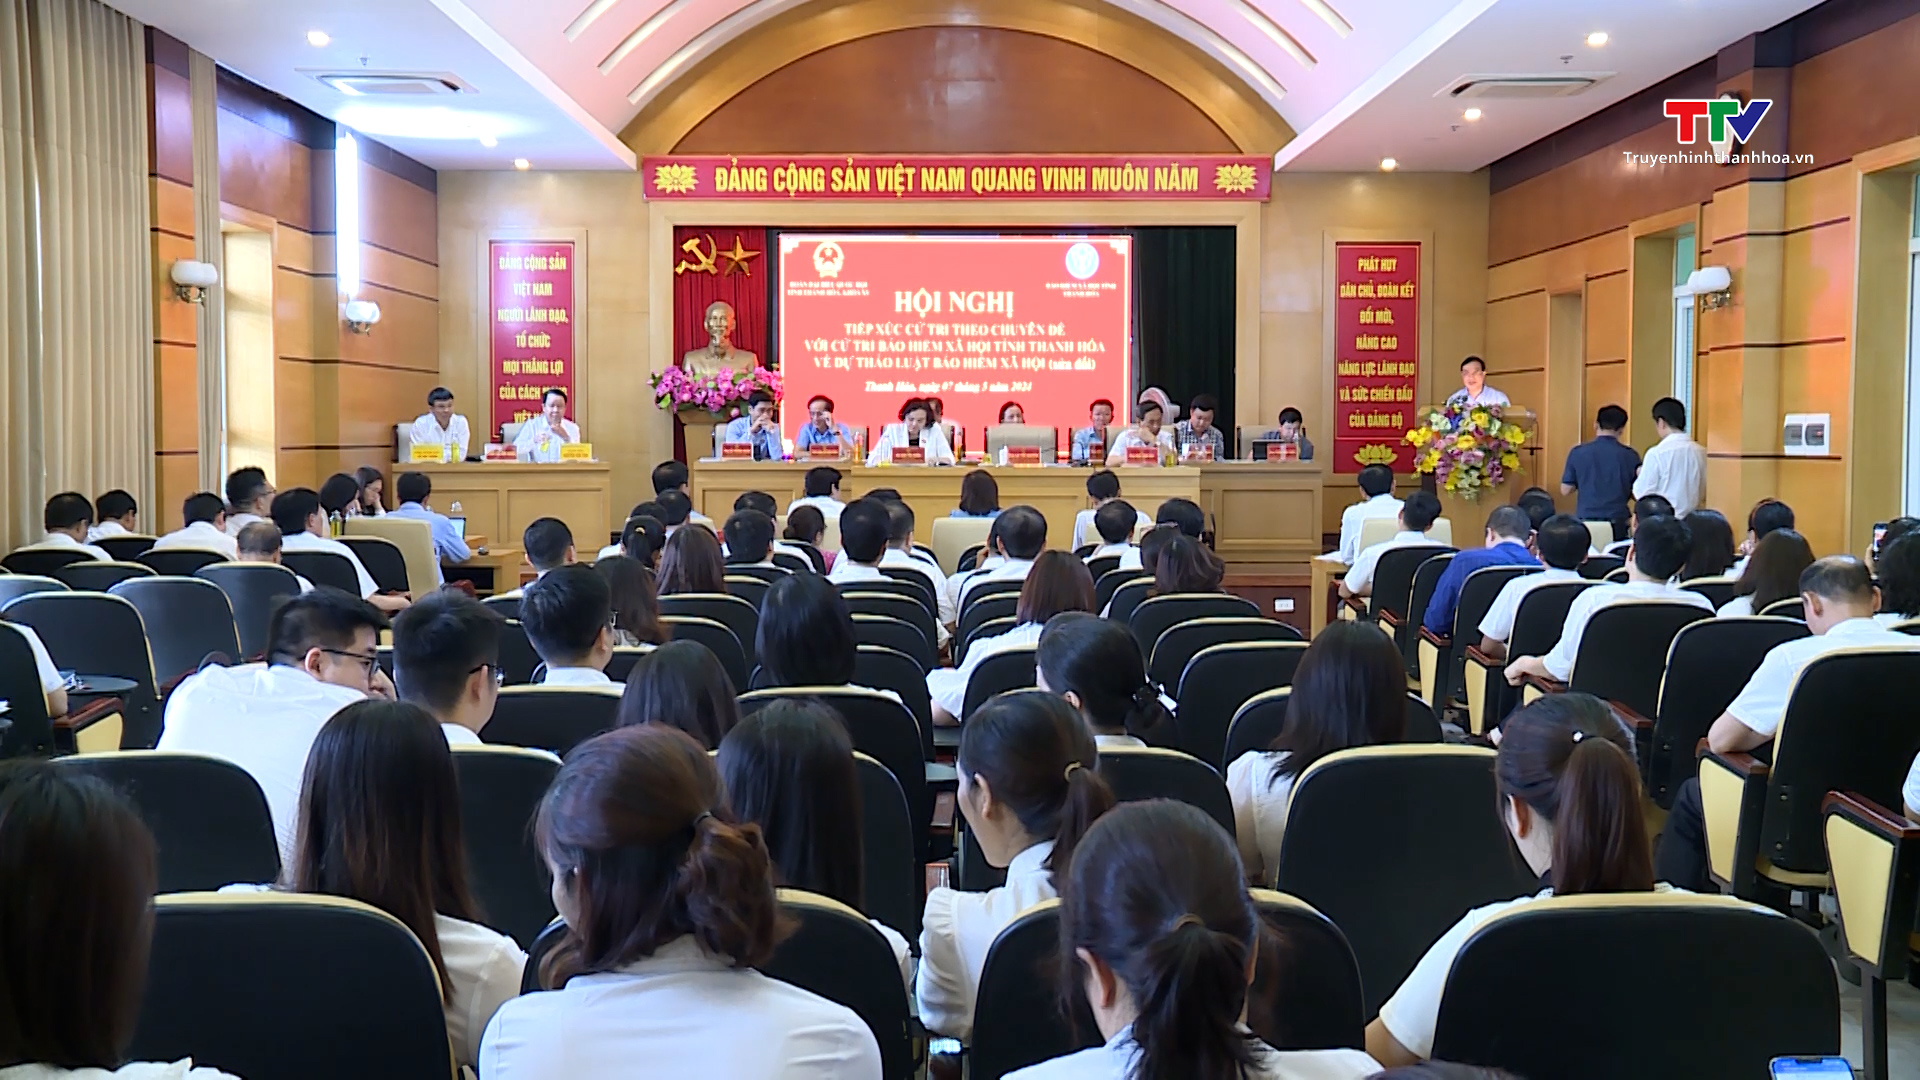 Đại biểu Quốc hội tỉnh Thanh Hoá tiếp xúc cử tri theo chuyên đề với cử tri bảo hiểm xã hội tỉnh Thanh Hoá- Ảnh 4.